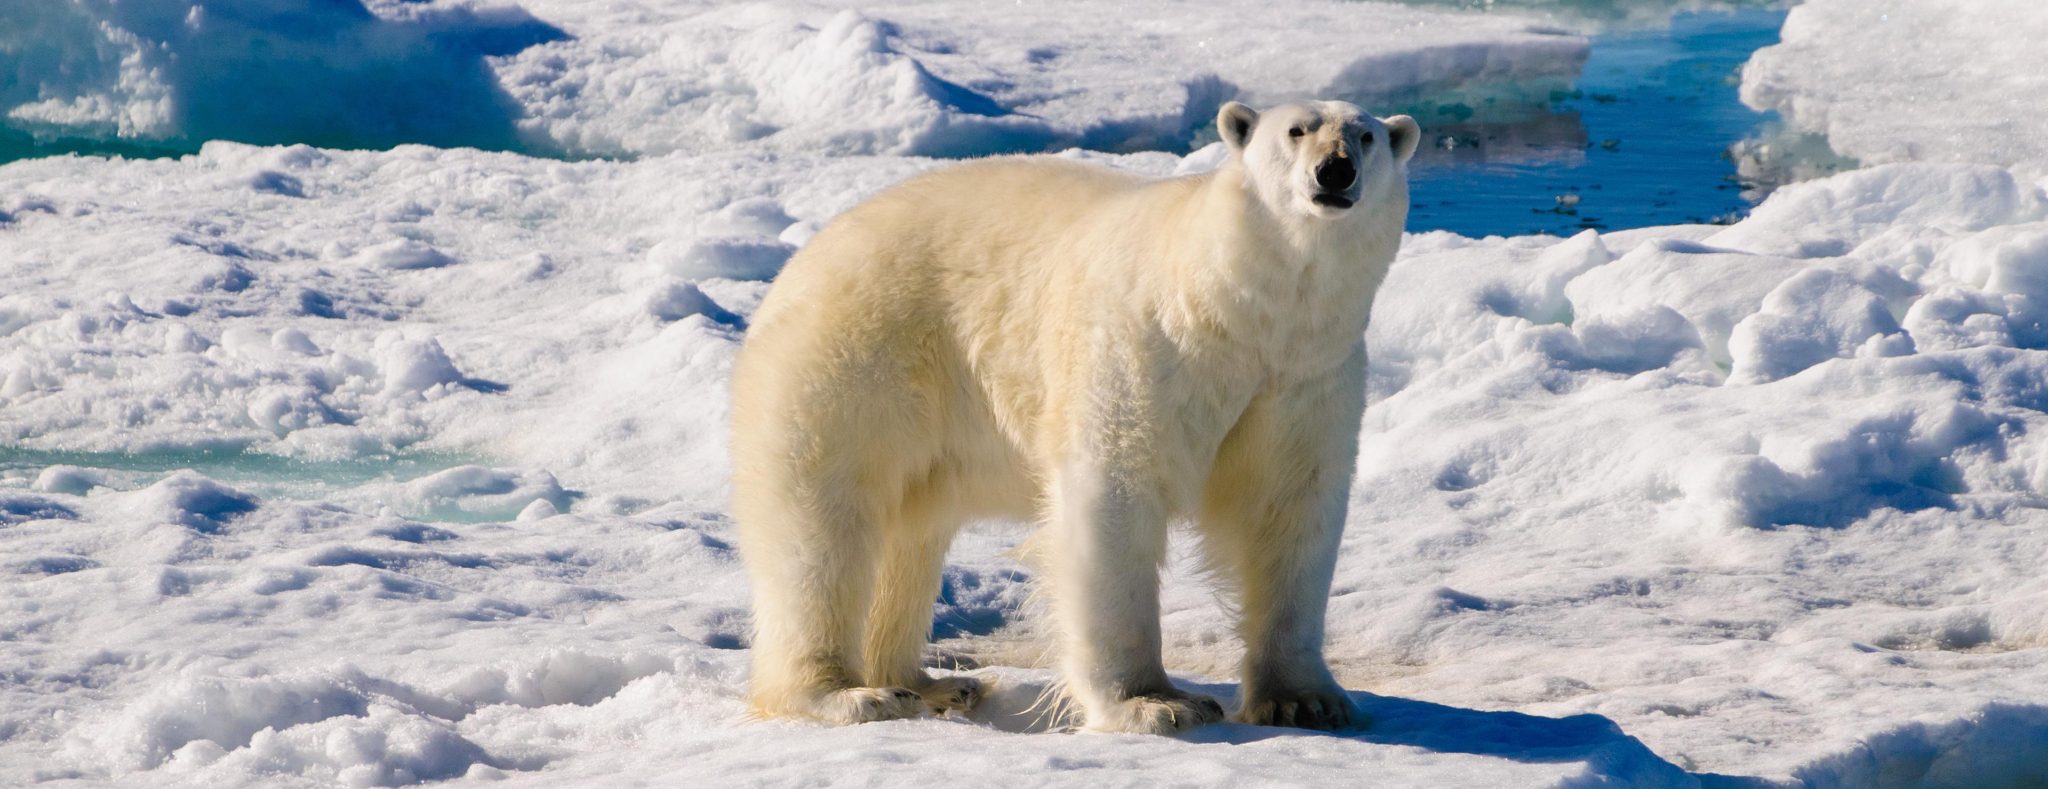 Creating Stories Spitsbergen ijsbeer